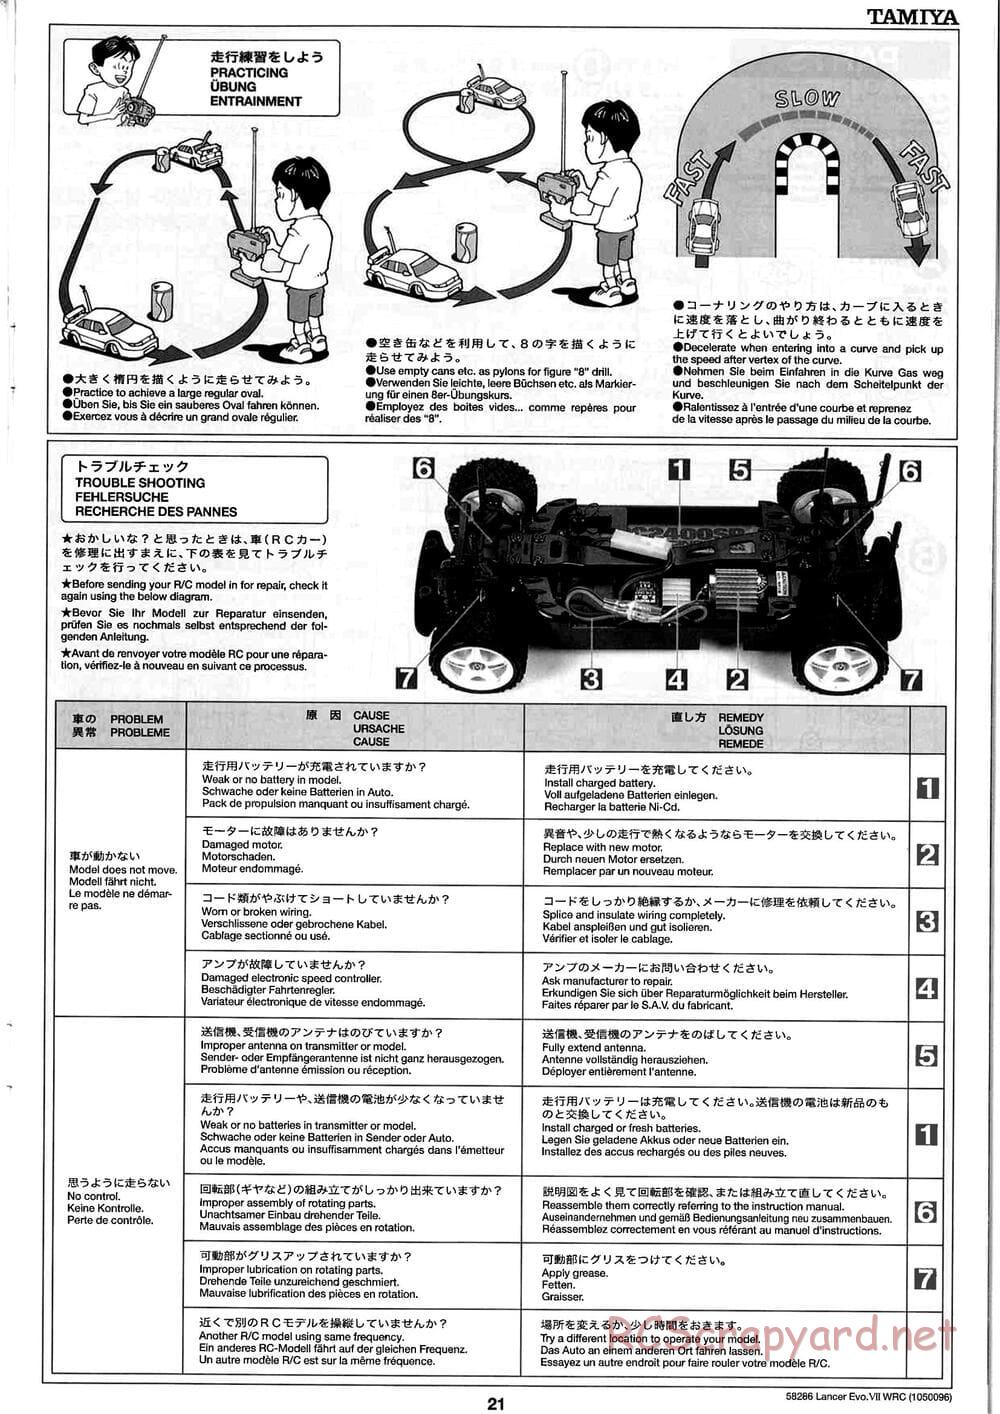 Tamiya - Mitsubishi Lancer Evolution VII WRC - TB-01 Chassis - Manual - Page 21